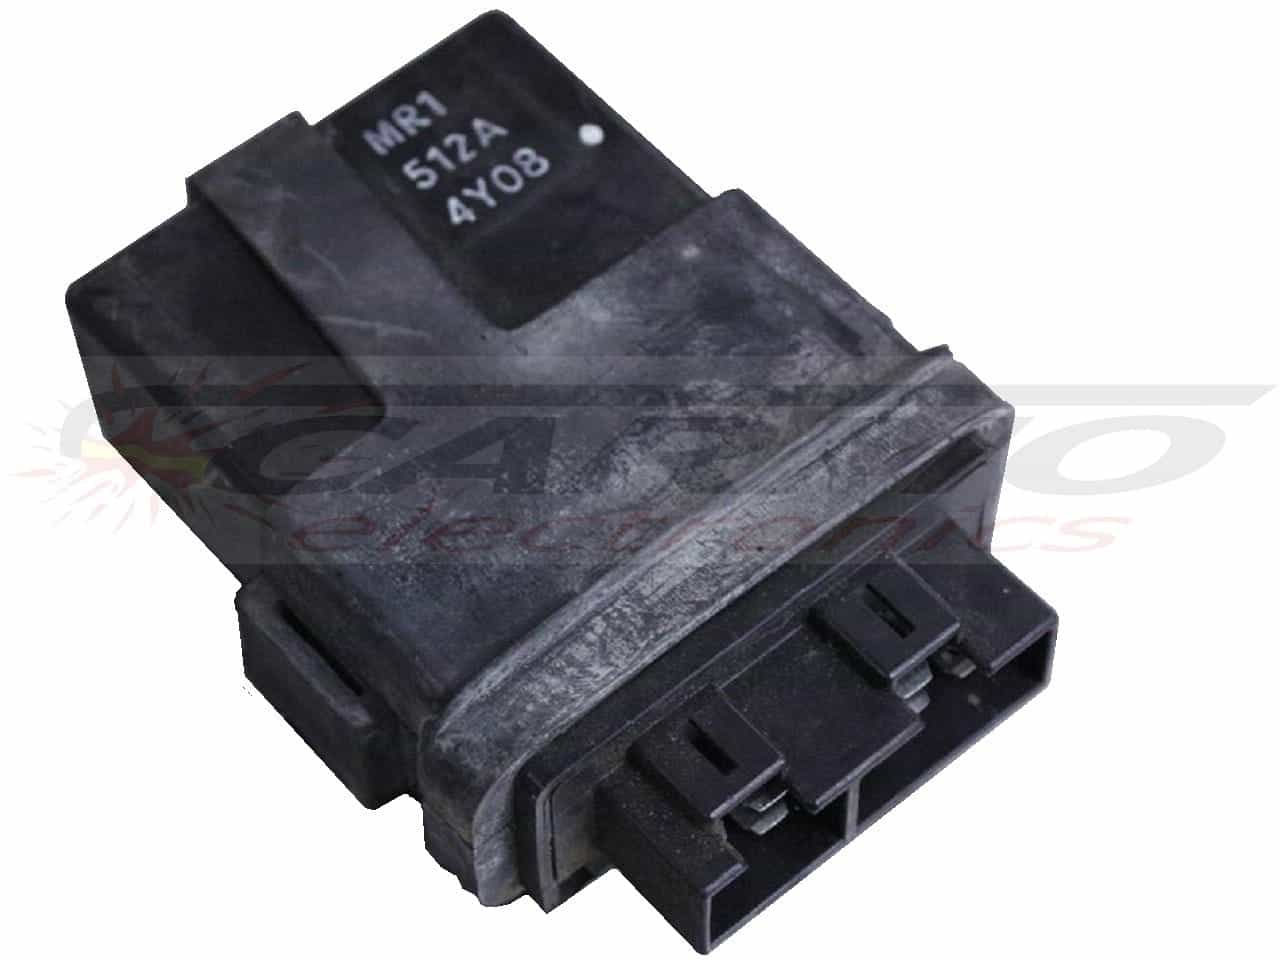 CBX1000 Prolink TCI CDI dispositif de commande boîte noire (MR1, 512A)